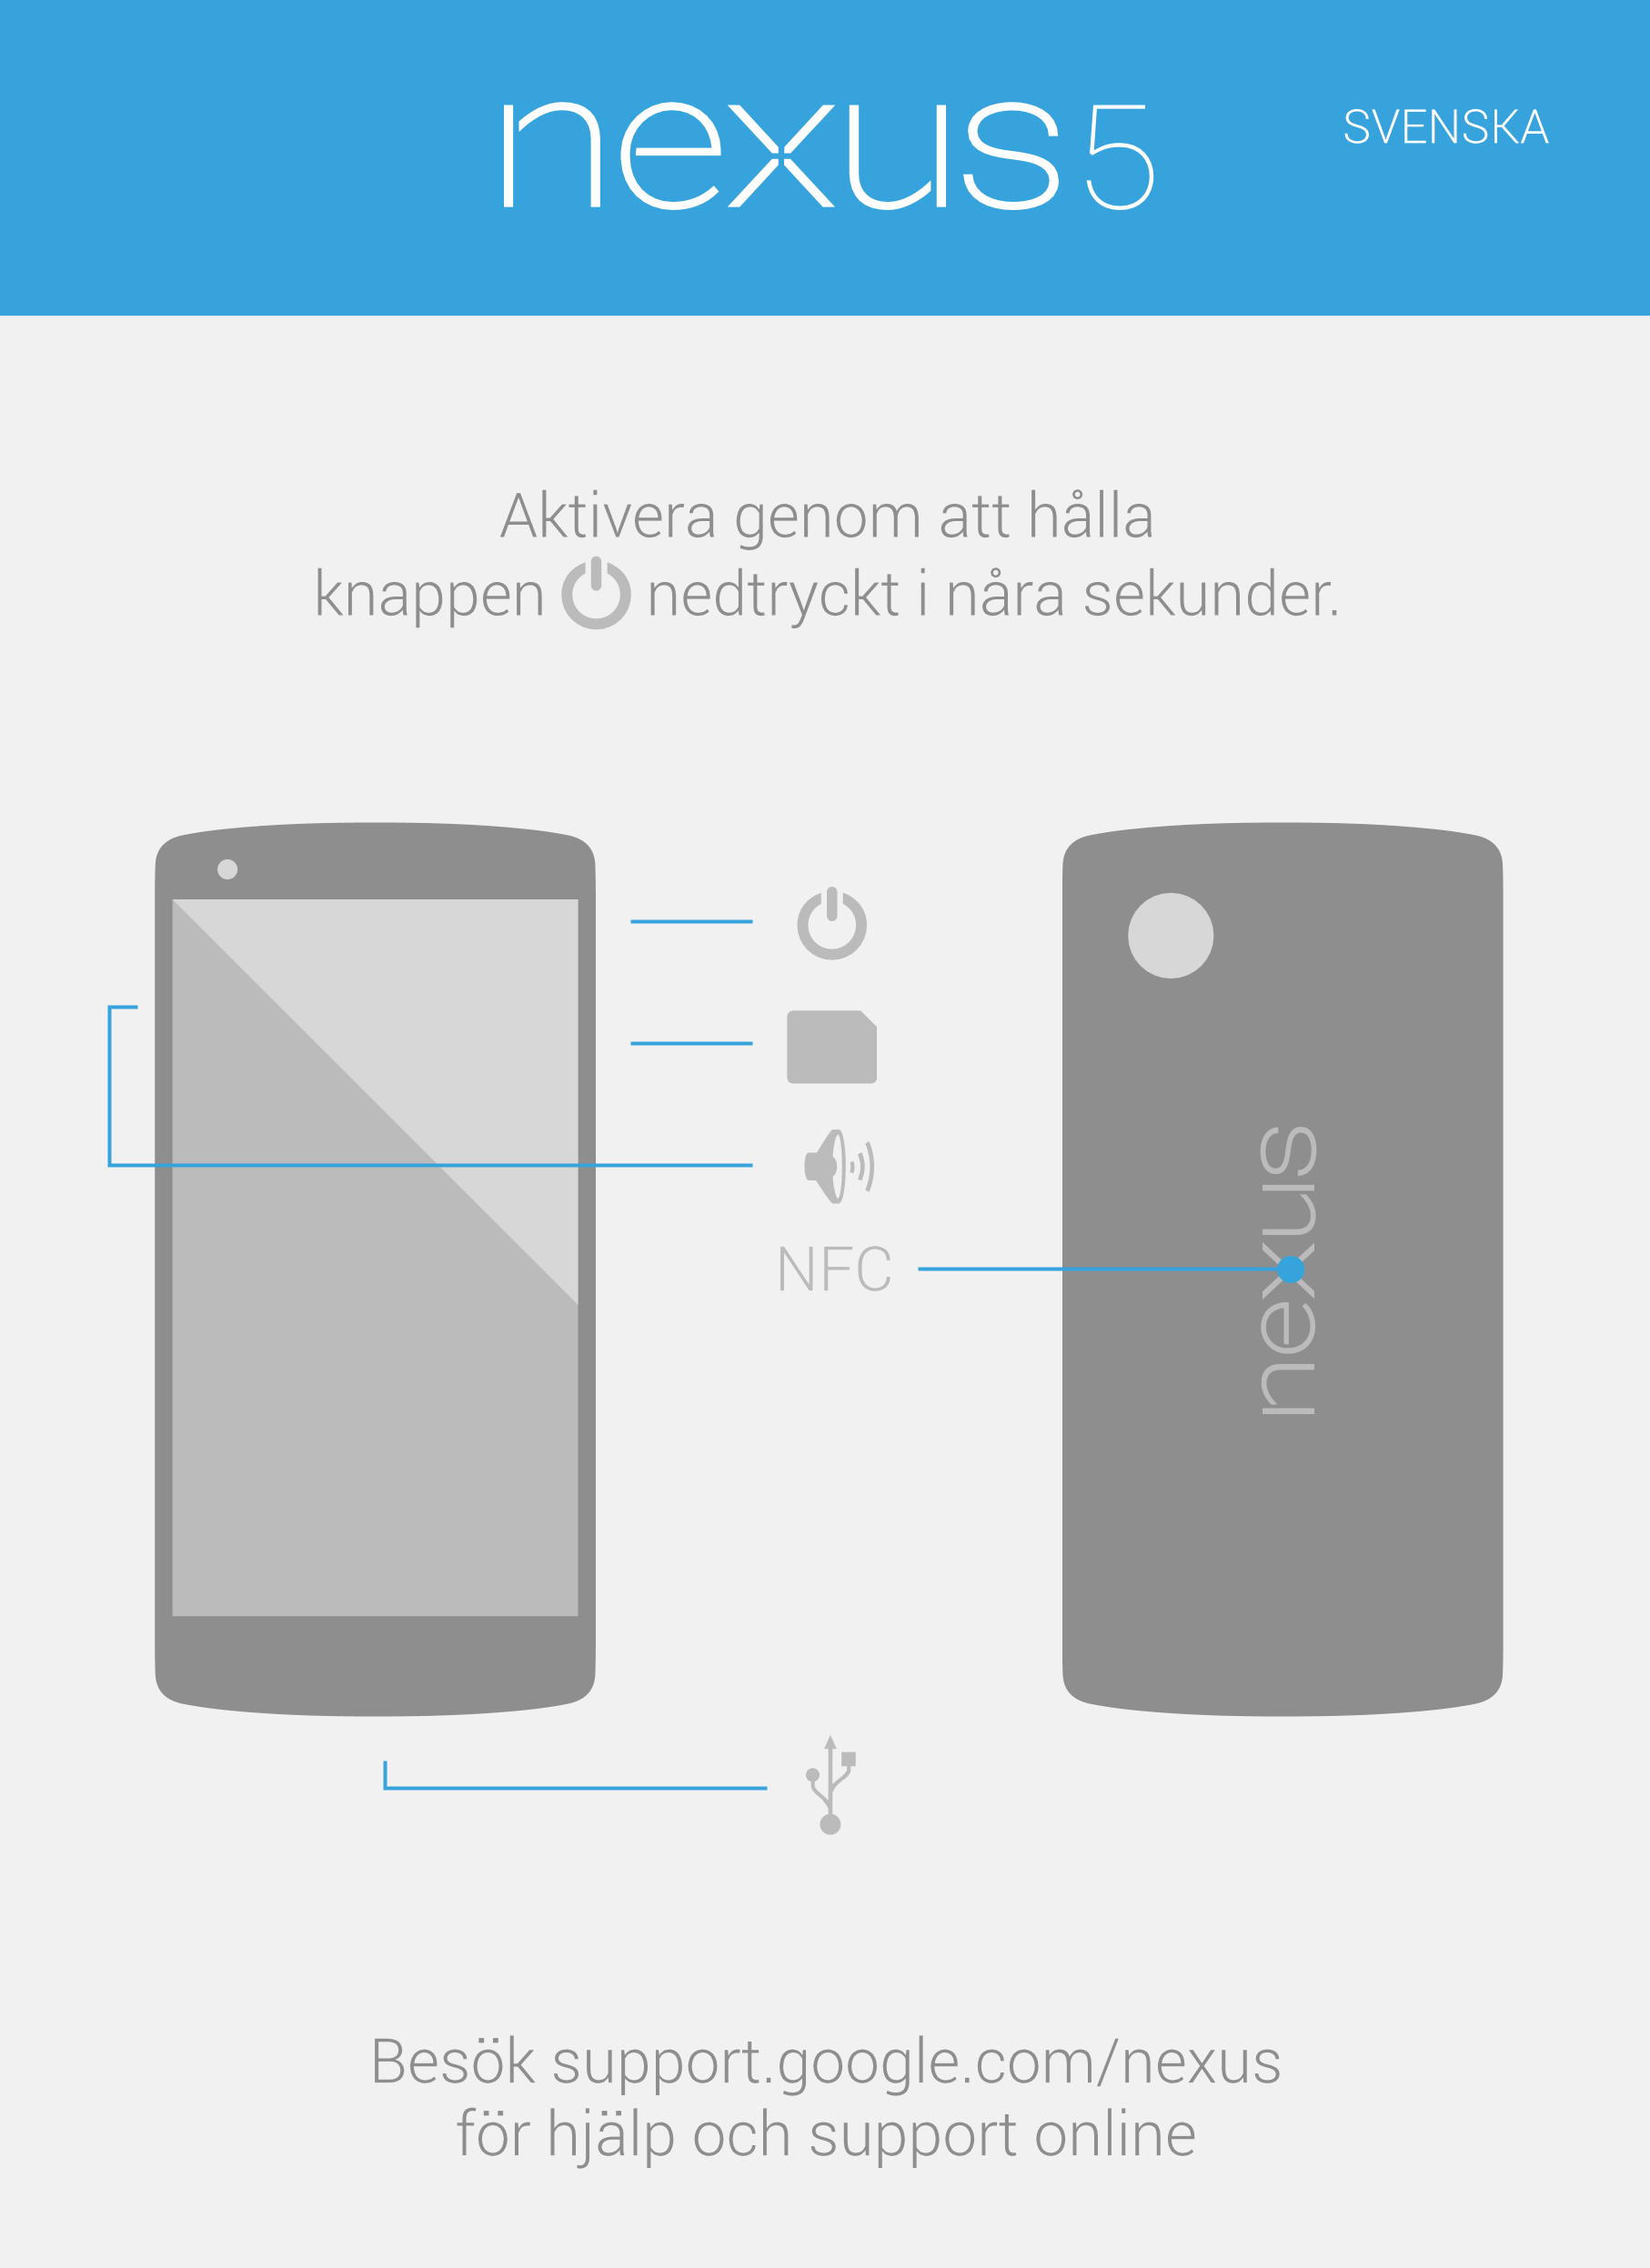 SVENSKA
Aktivera genom att hålla 
knappen   nedtryckt i nåra sekunder.
NFC
Besök support.google.com/nexus
för hjälp och support 